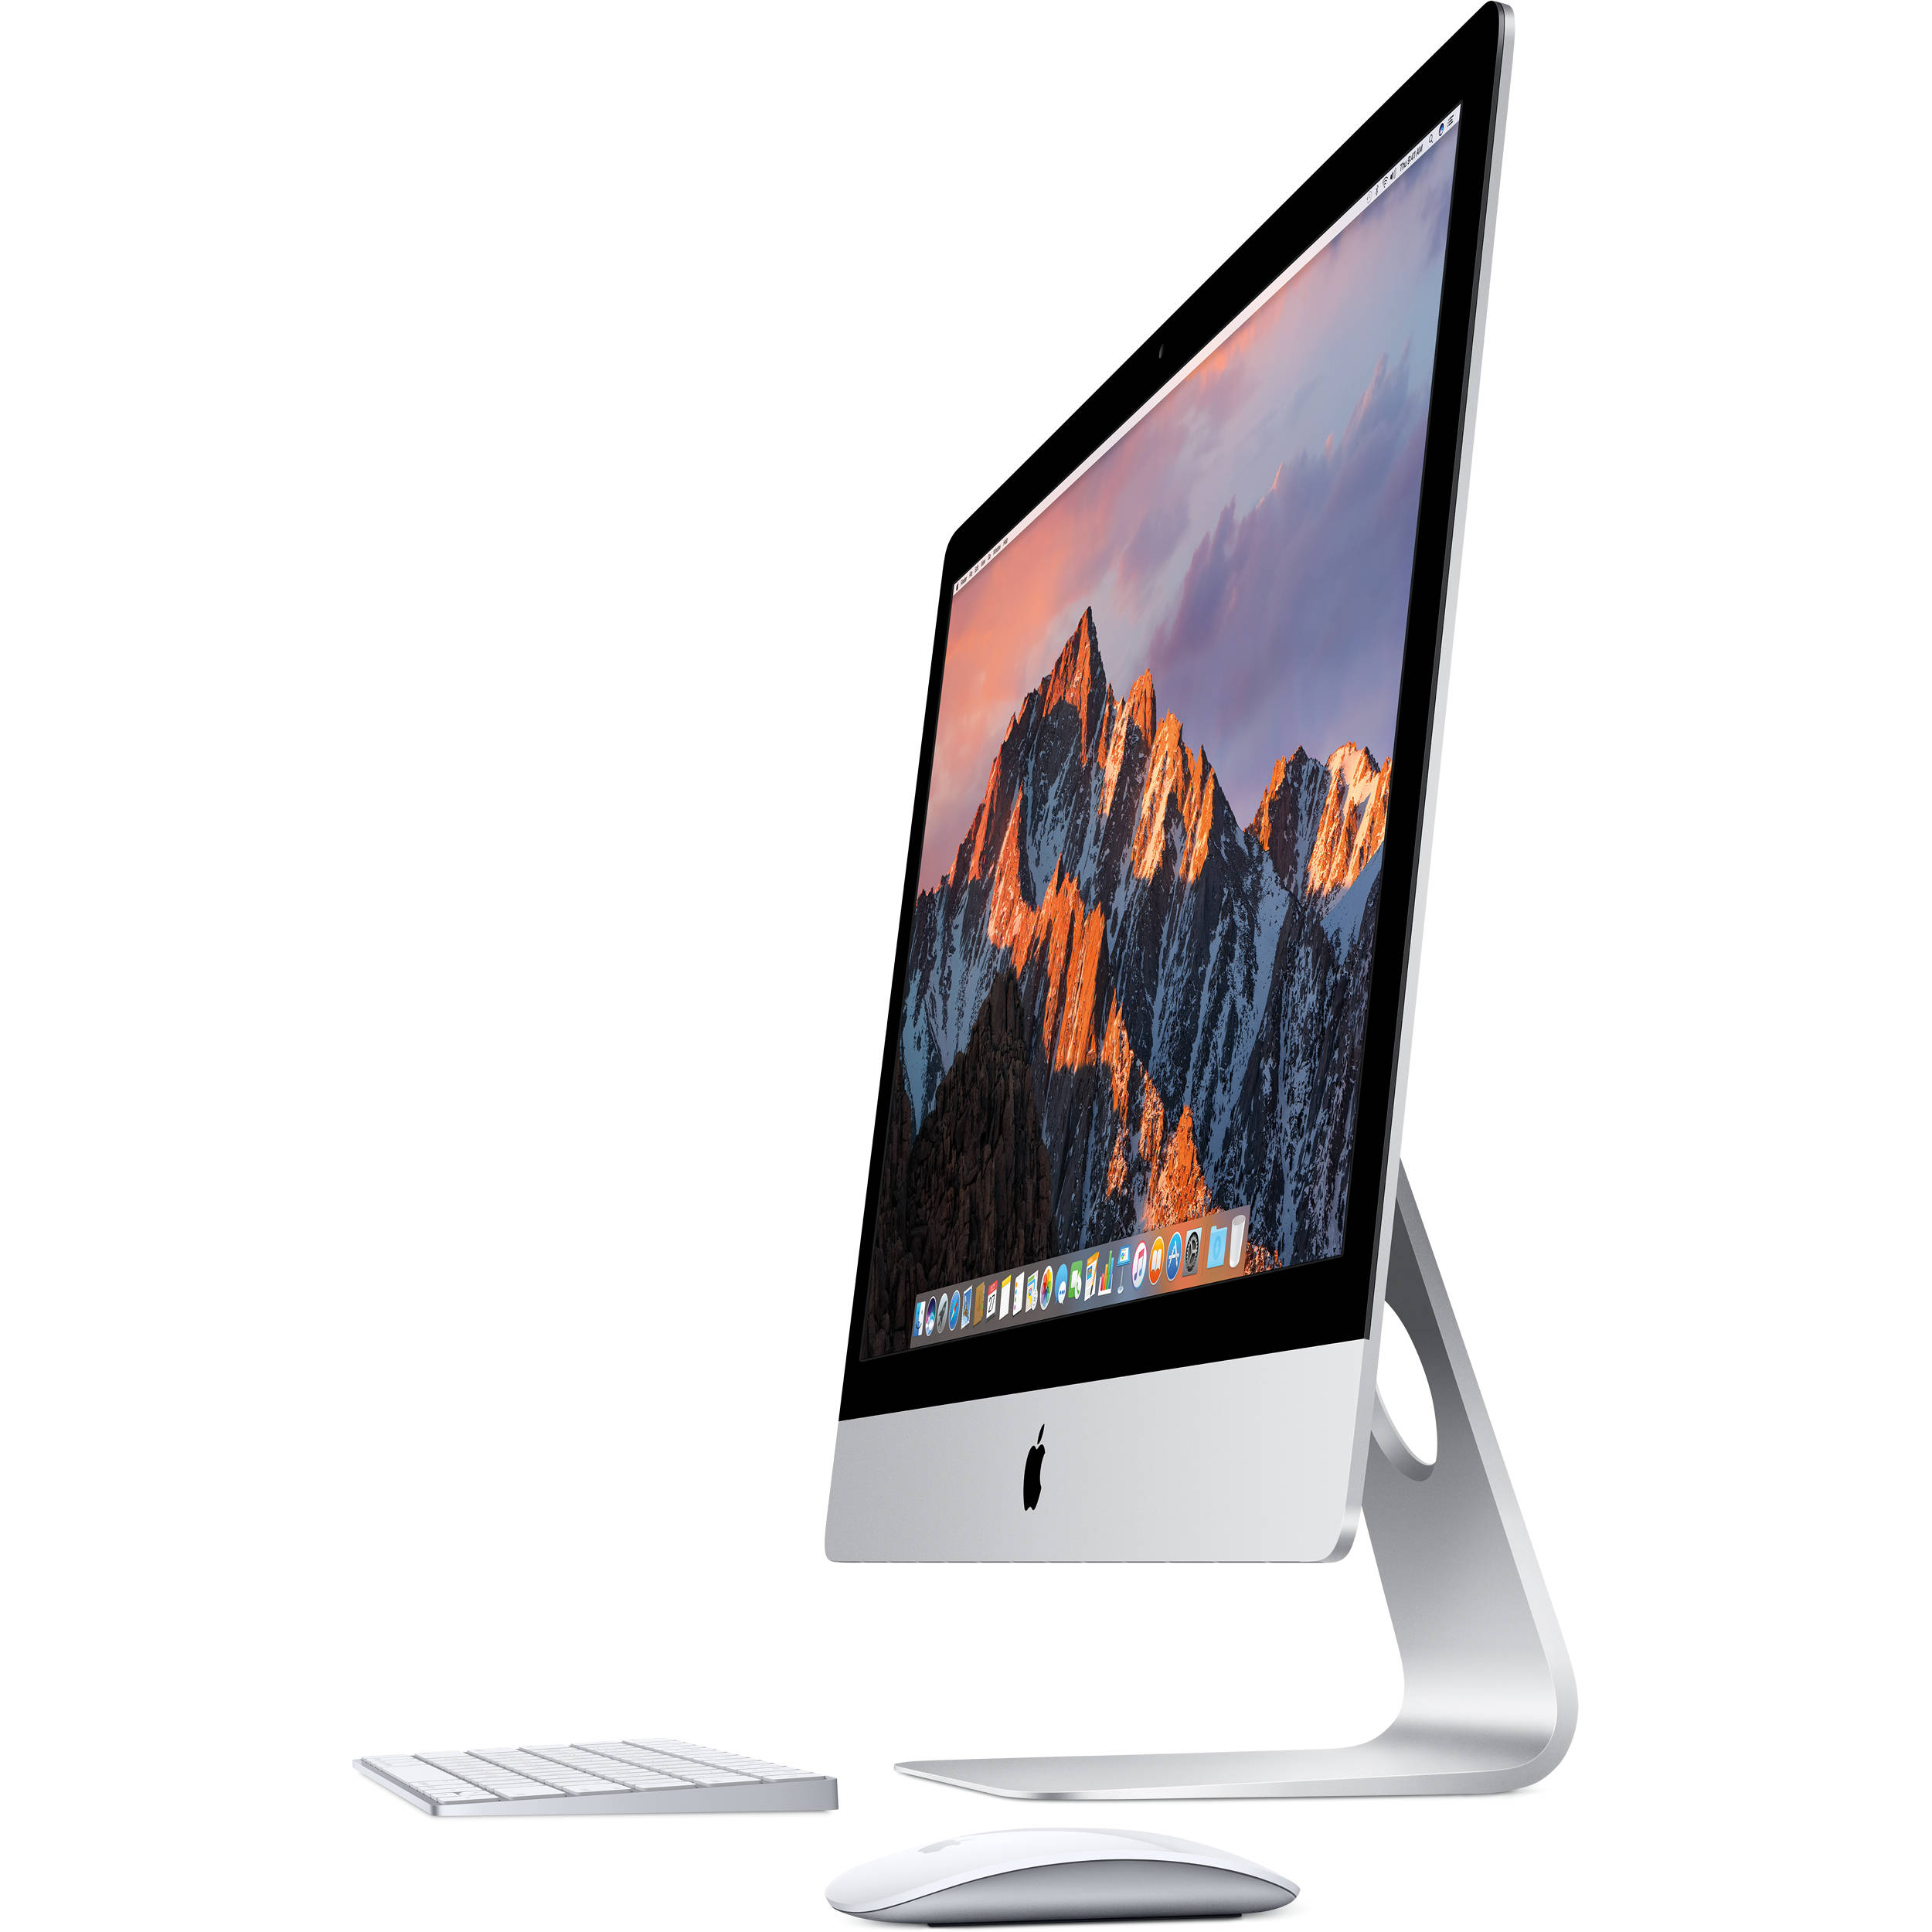 iMac 5k 27 inch 2017